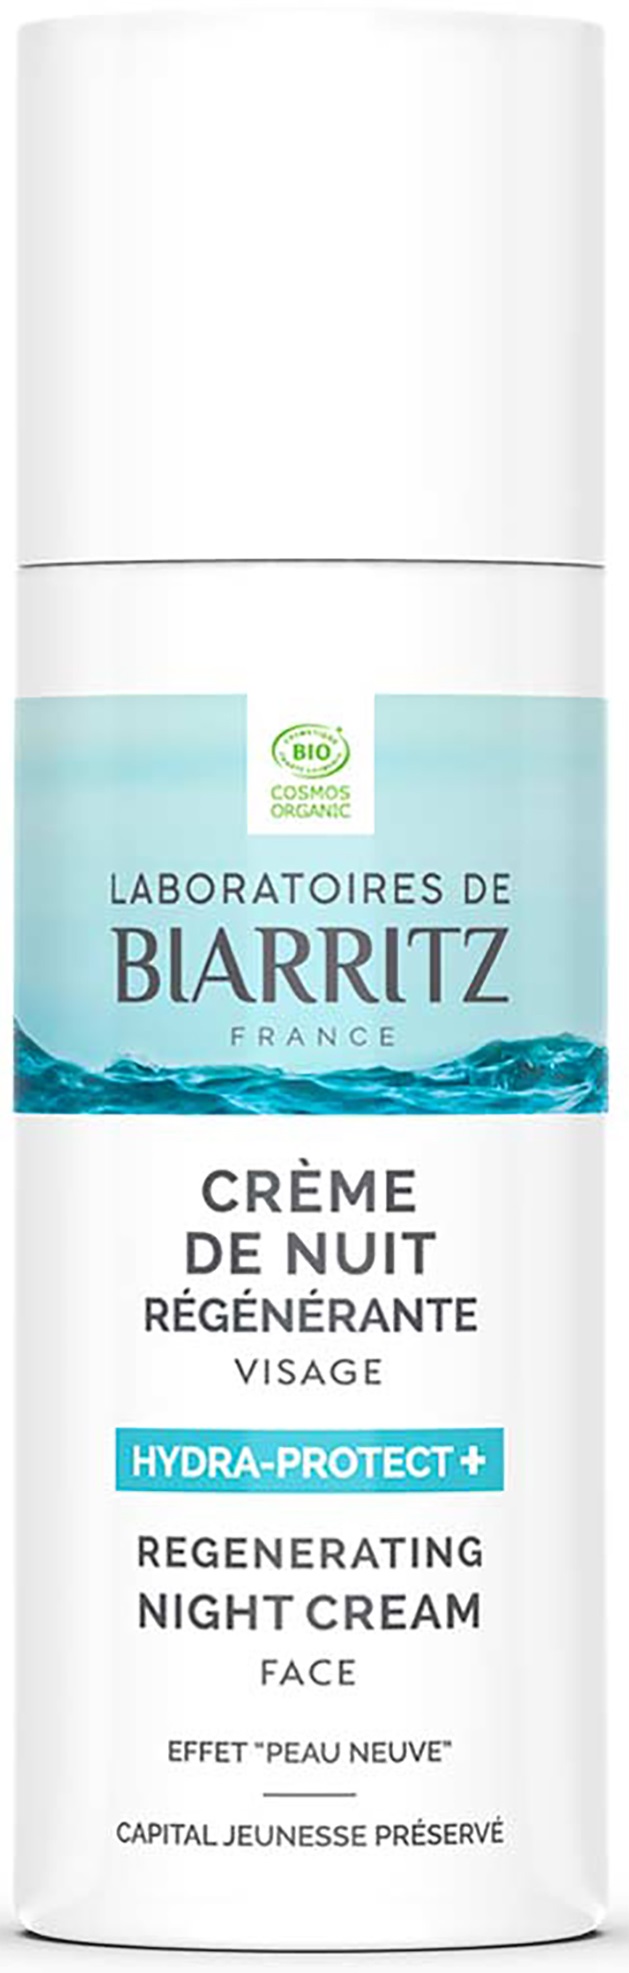 HYDRA PROTECT+ - Crème Hydratante Visage - Laboratoires de biarritz